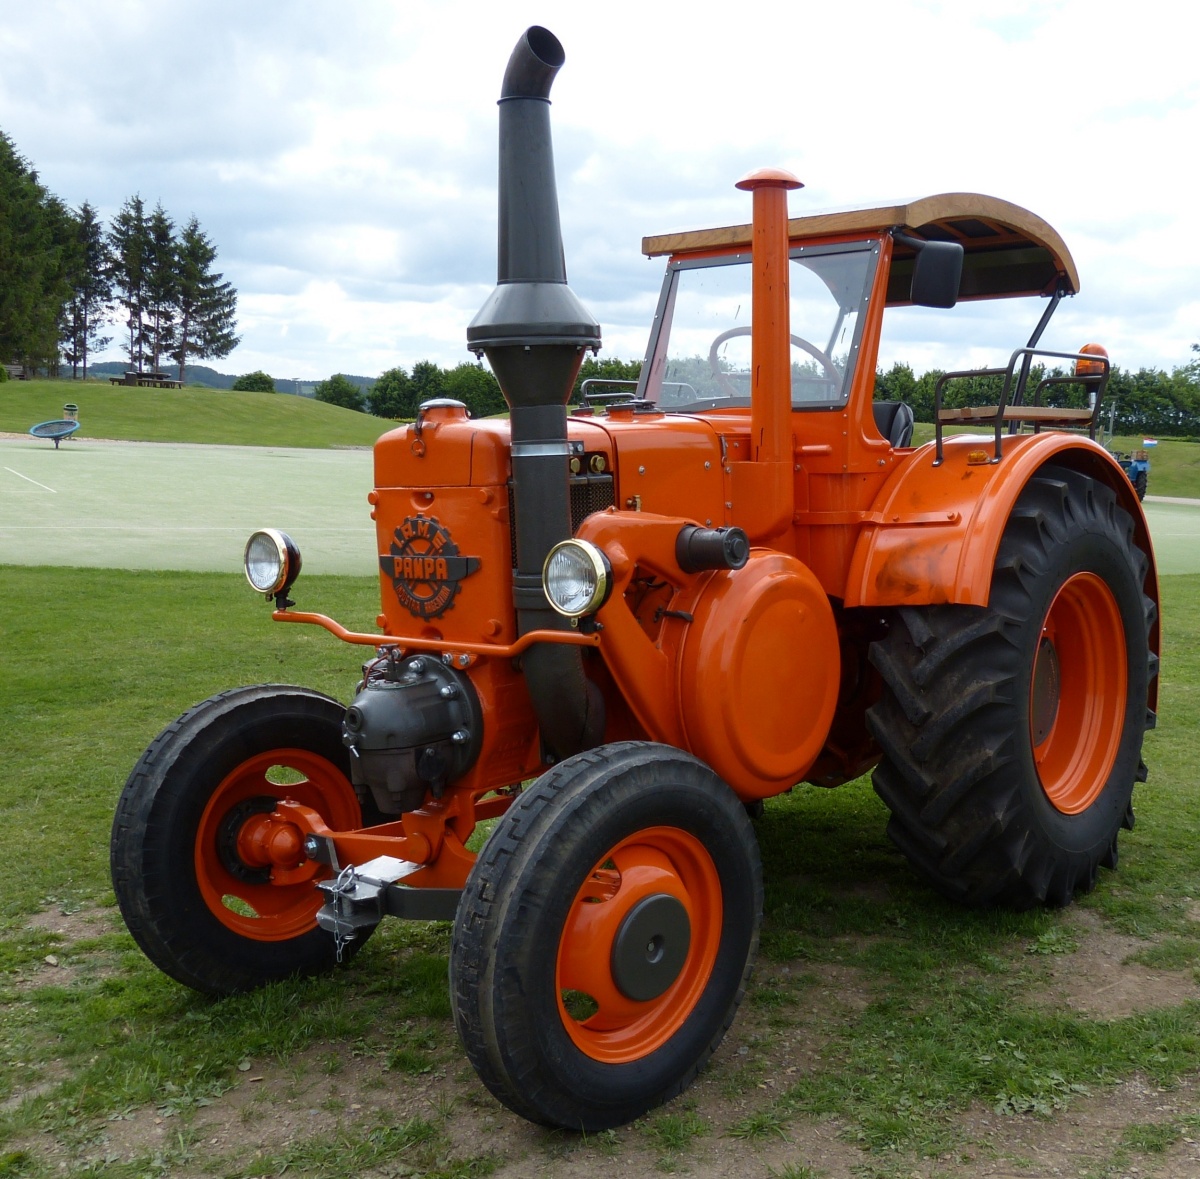 Traktor Pampa T01, gebaut bei I.A.M.E. in Argentinien, Bj 1955, gesehen beim Oltimertreff in Wntger (Wincrange(L). 29.05.2022